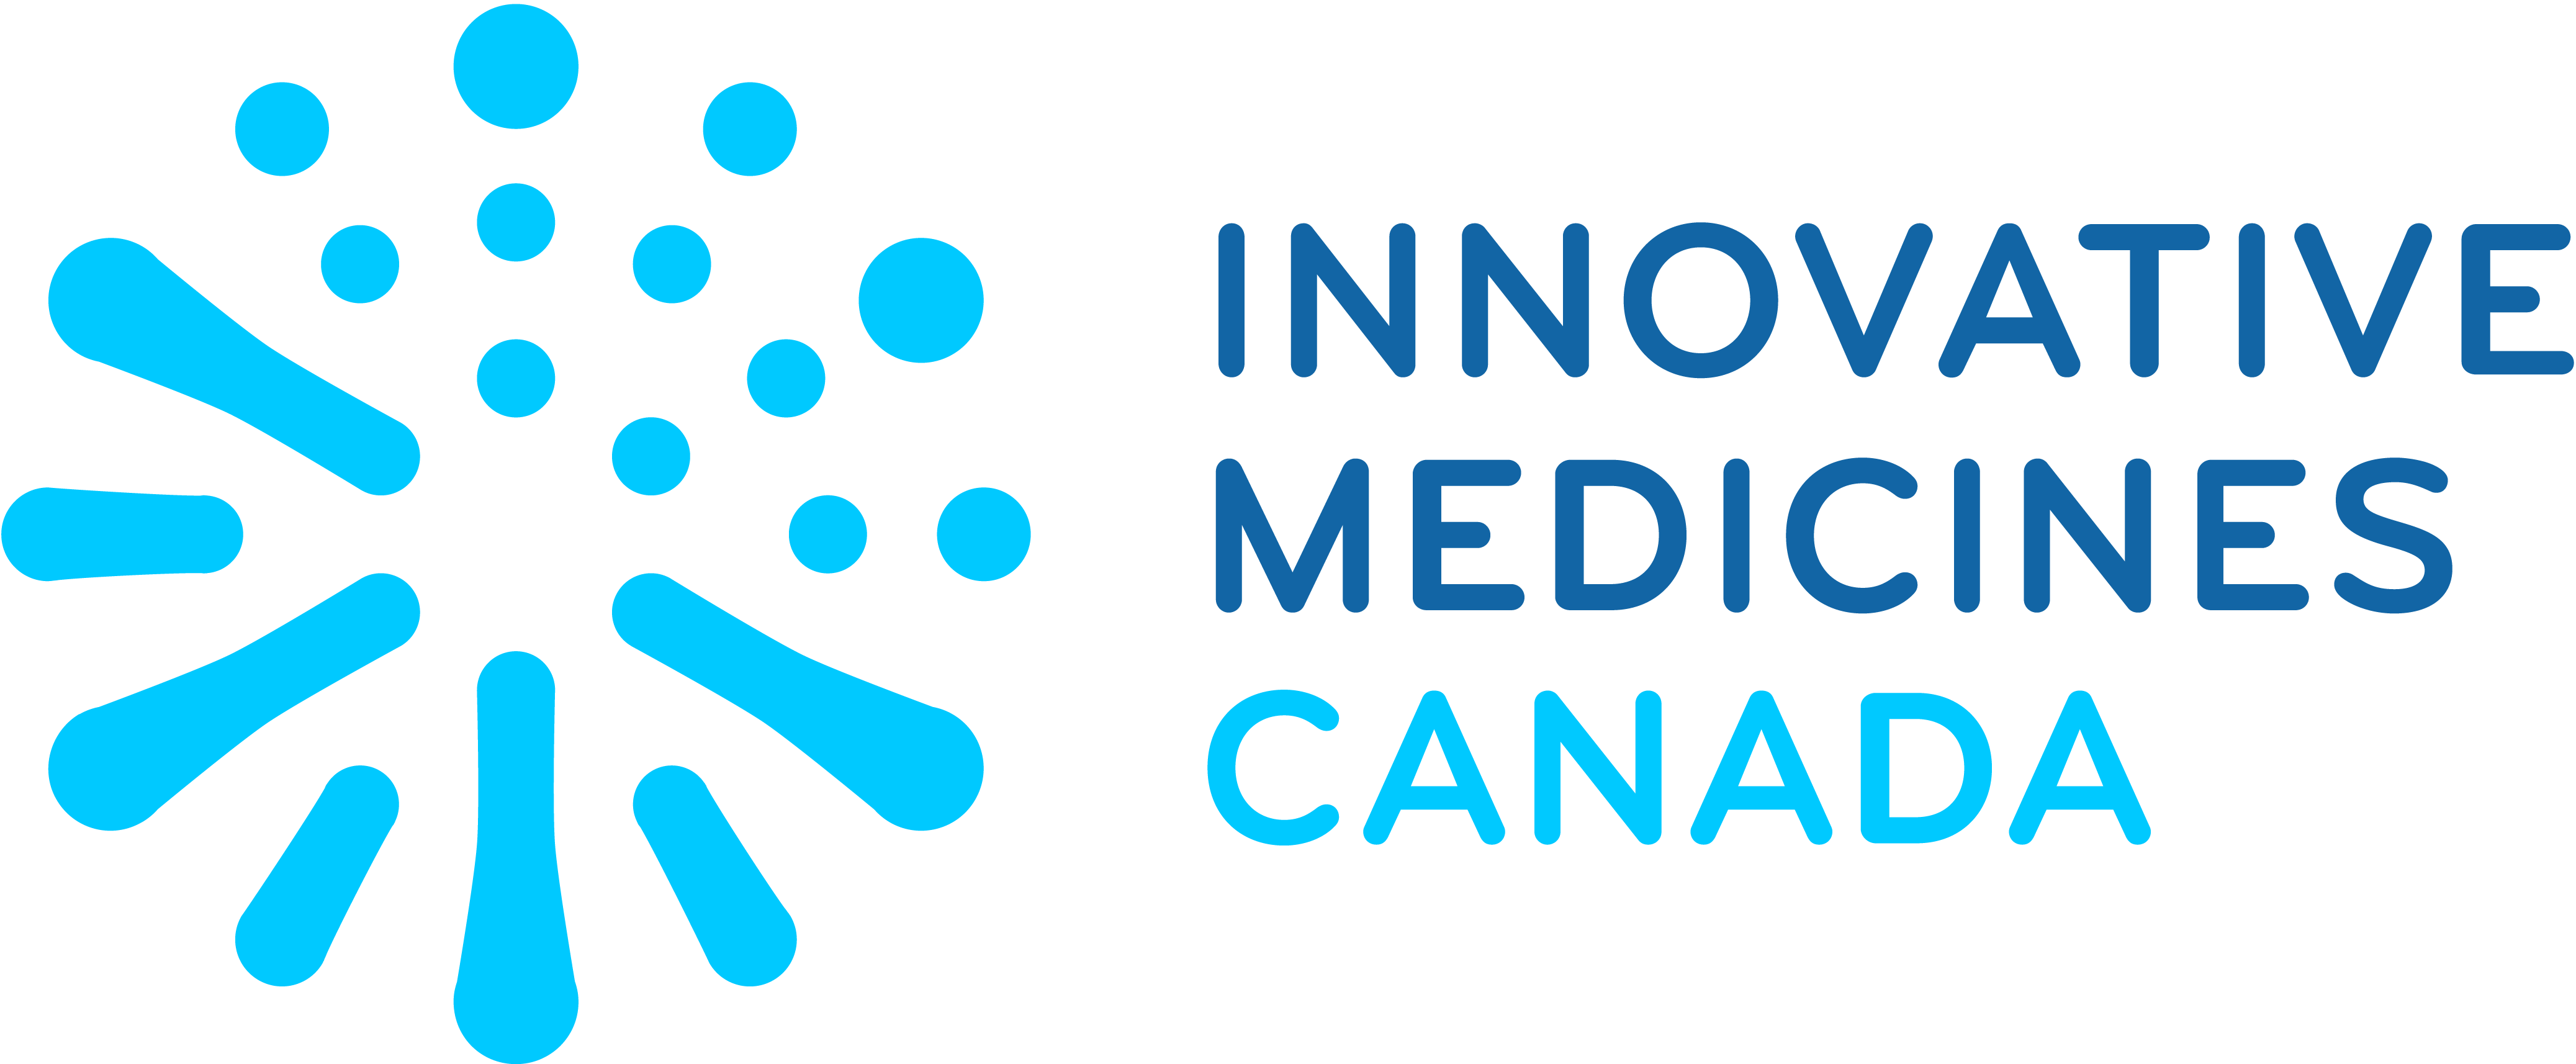 Medicines Canada Image